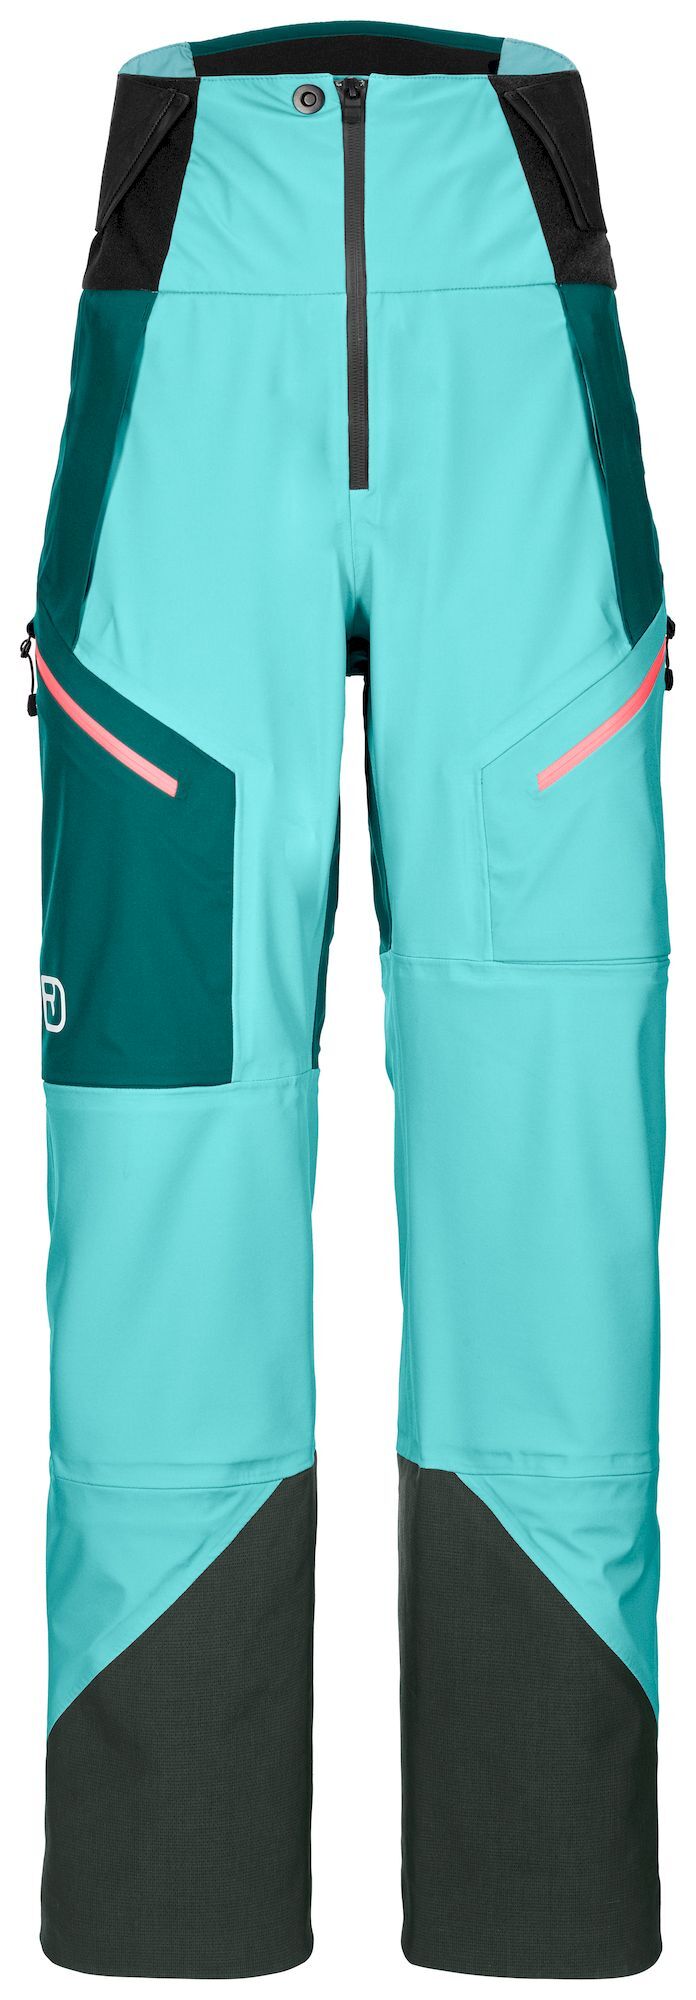 Ortovox 3L Guardian Shell Pants - Ski pants - Women's